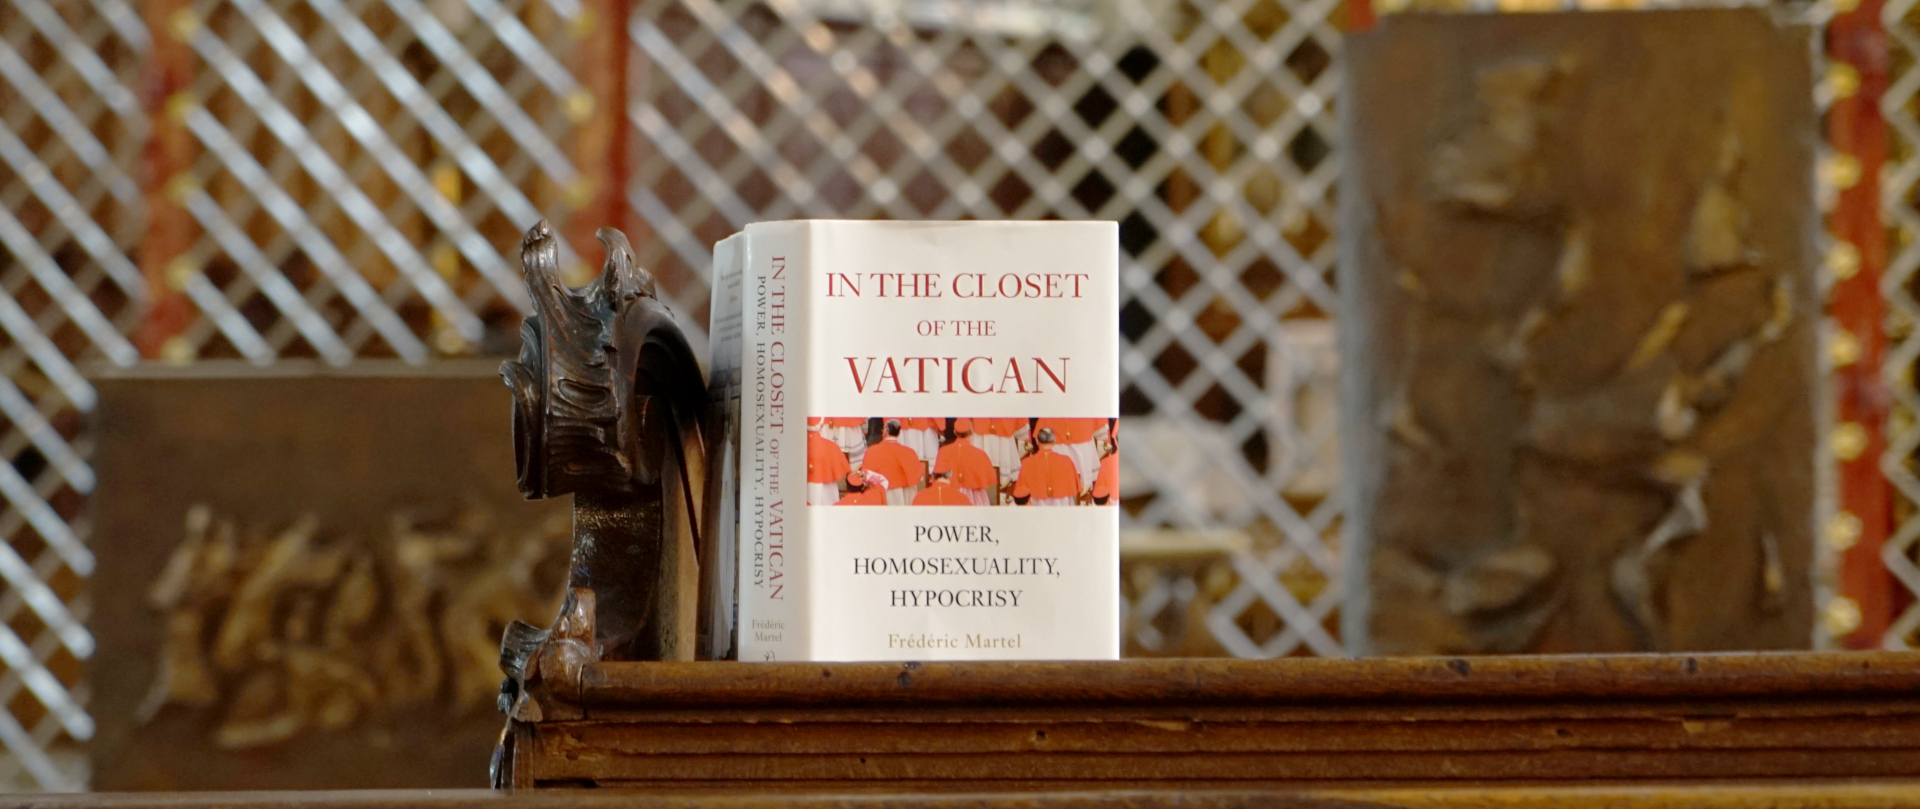 "Spdom" heisst der Titel auf deutsch  -"In the closet of the Vatican" auf englisch